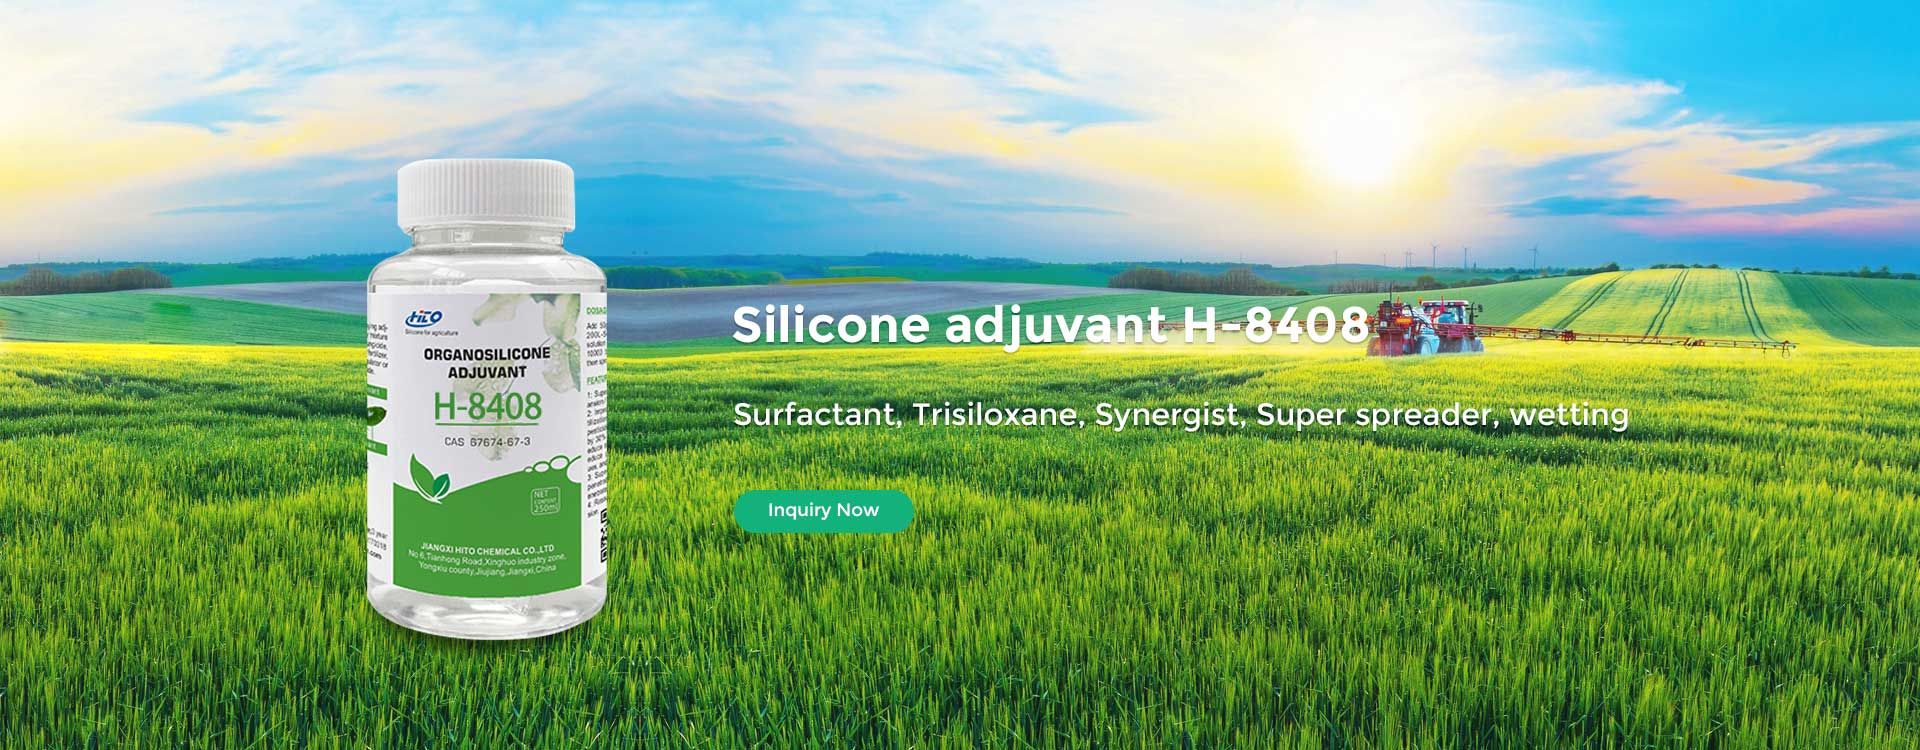 Silicone adjuvant H-8408